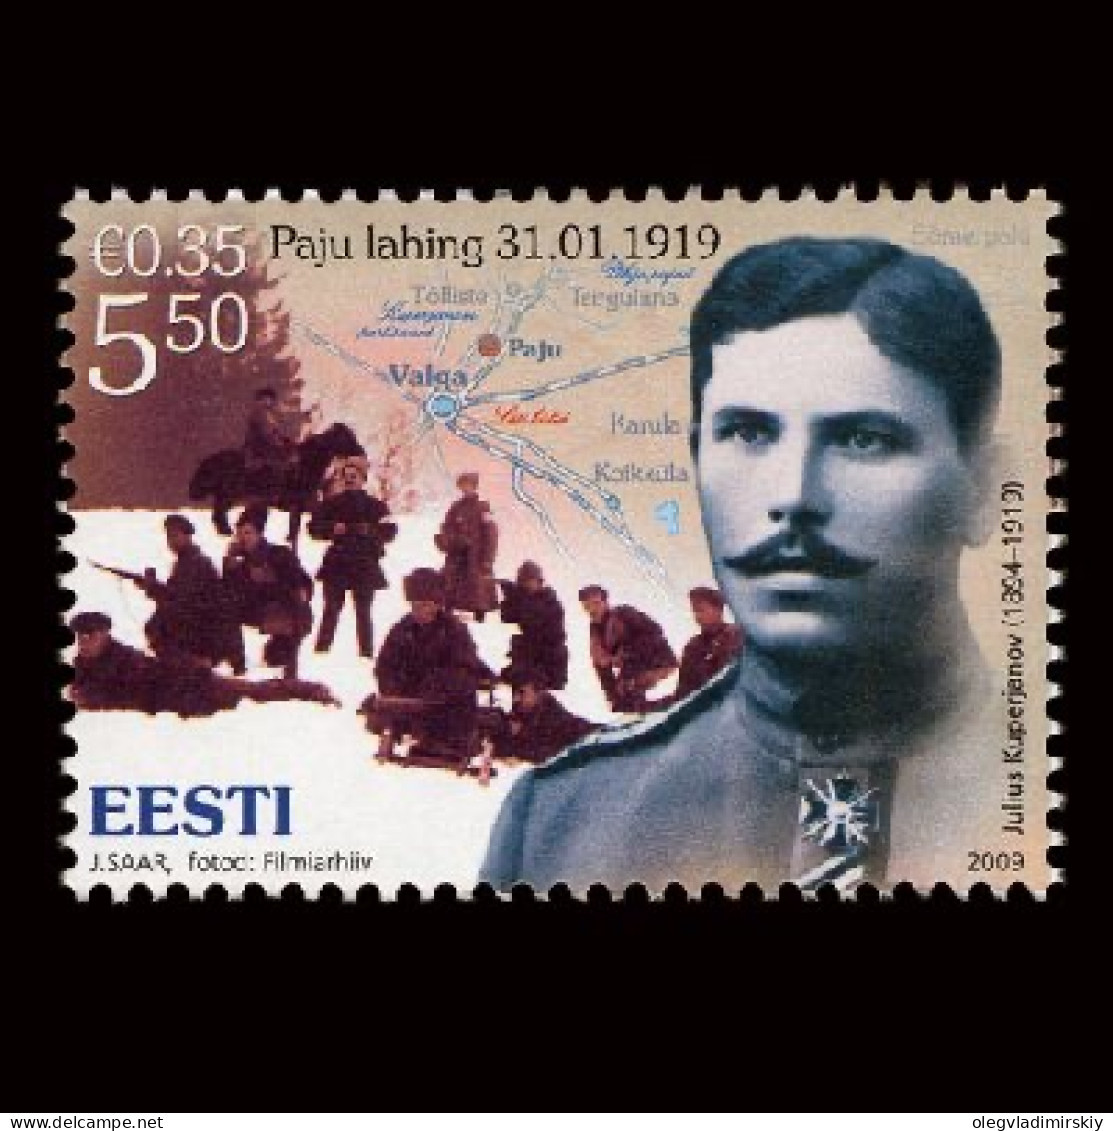 Estonia Estland 2009 Independence War 1919 Paju Battle Stamp Mint - Eisenbahnen